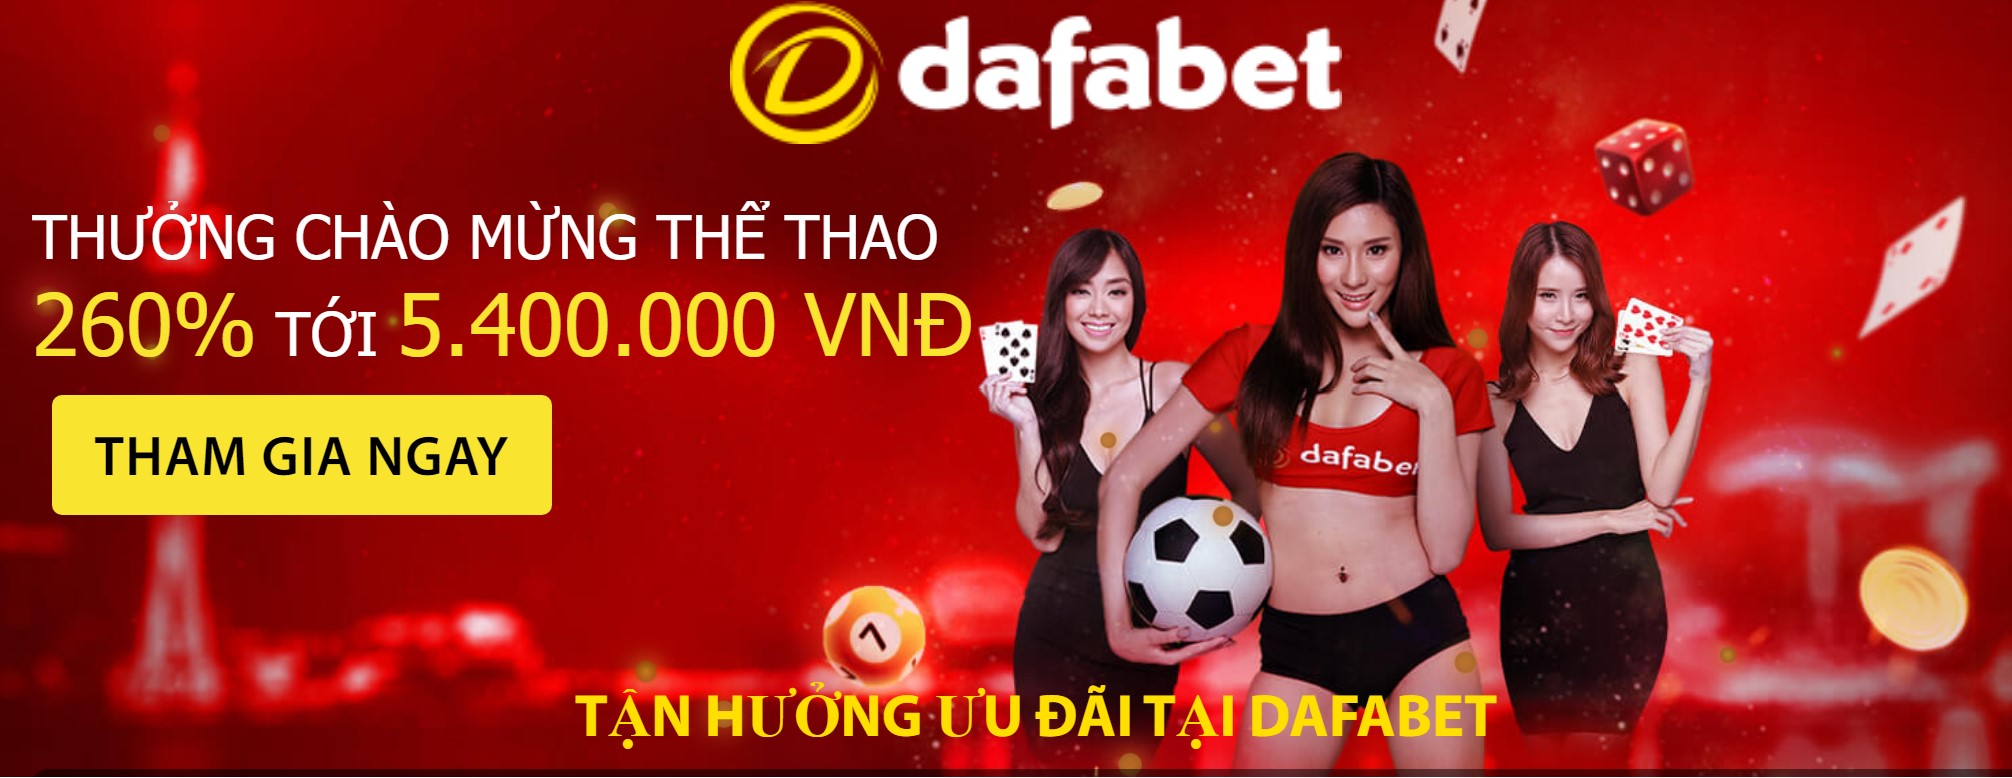 Get Now from Vietnam your Dafabet welcome bonus